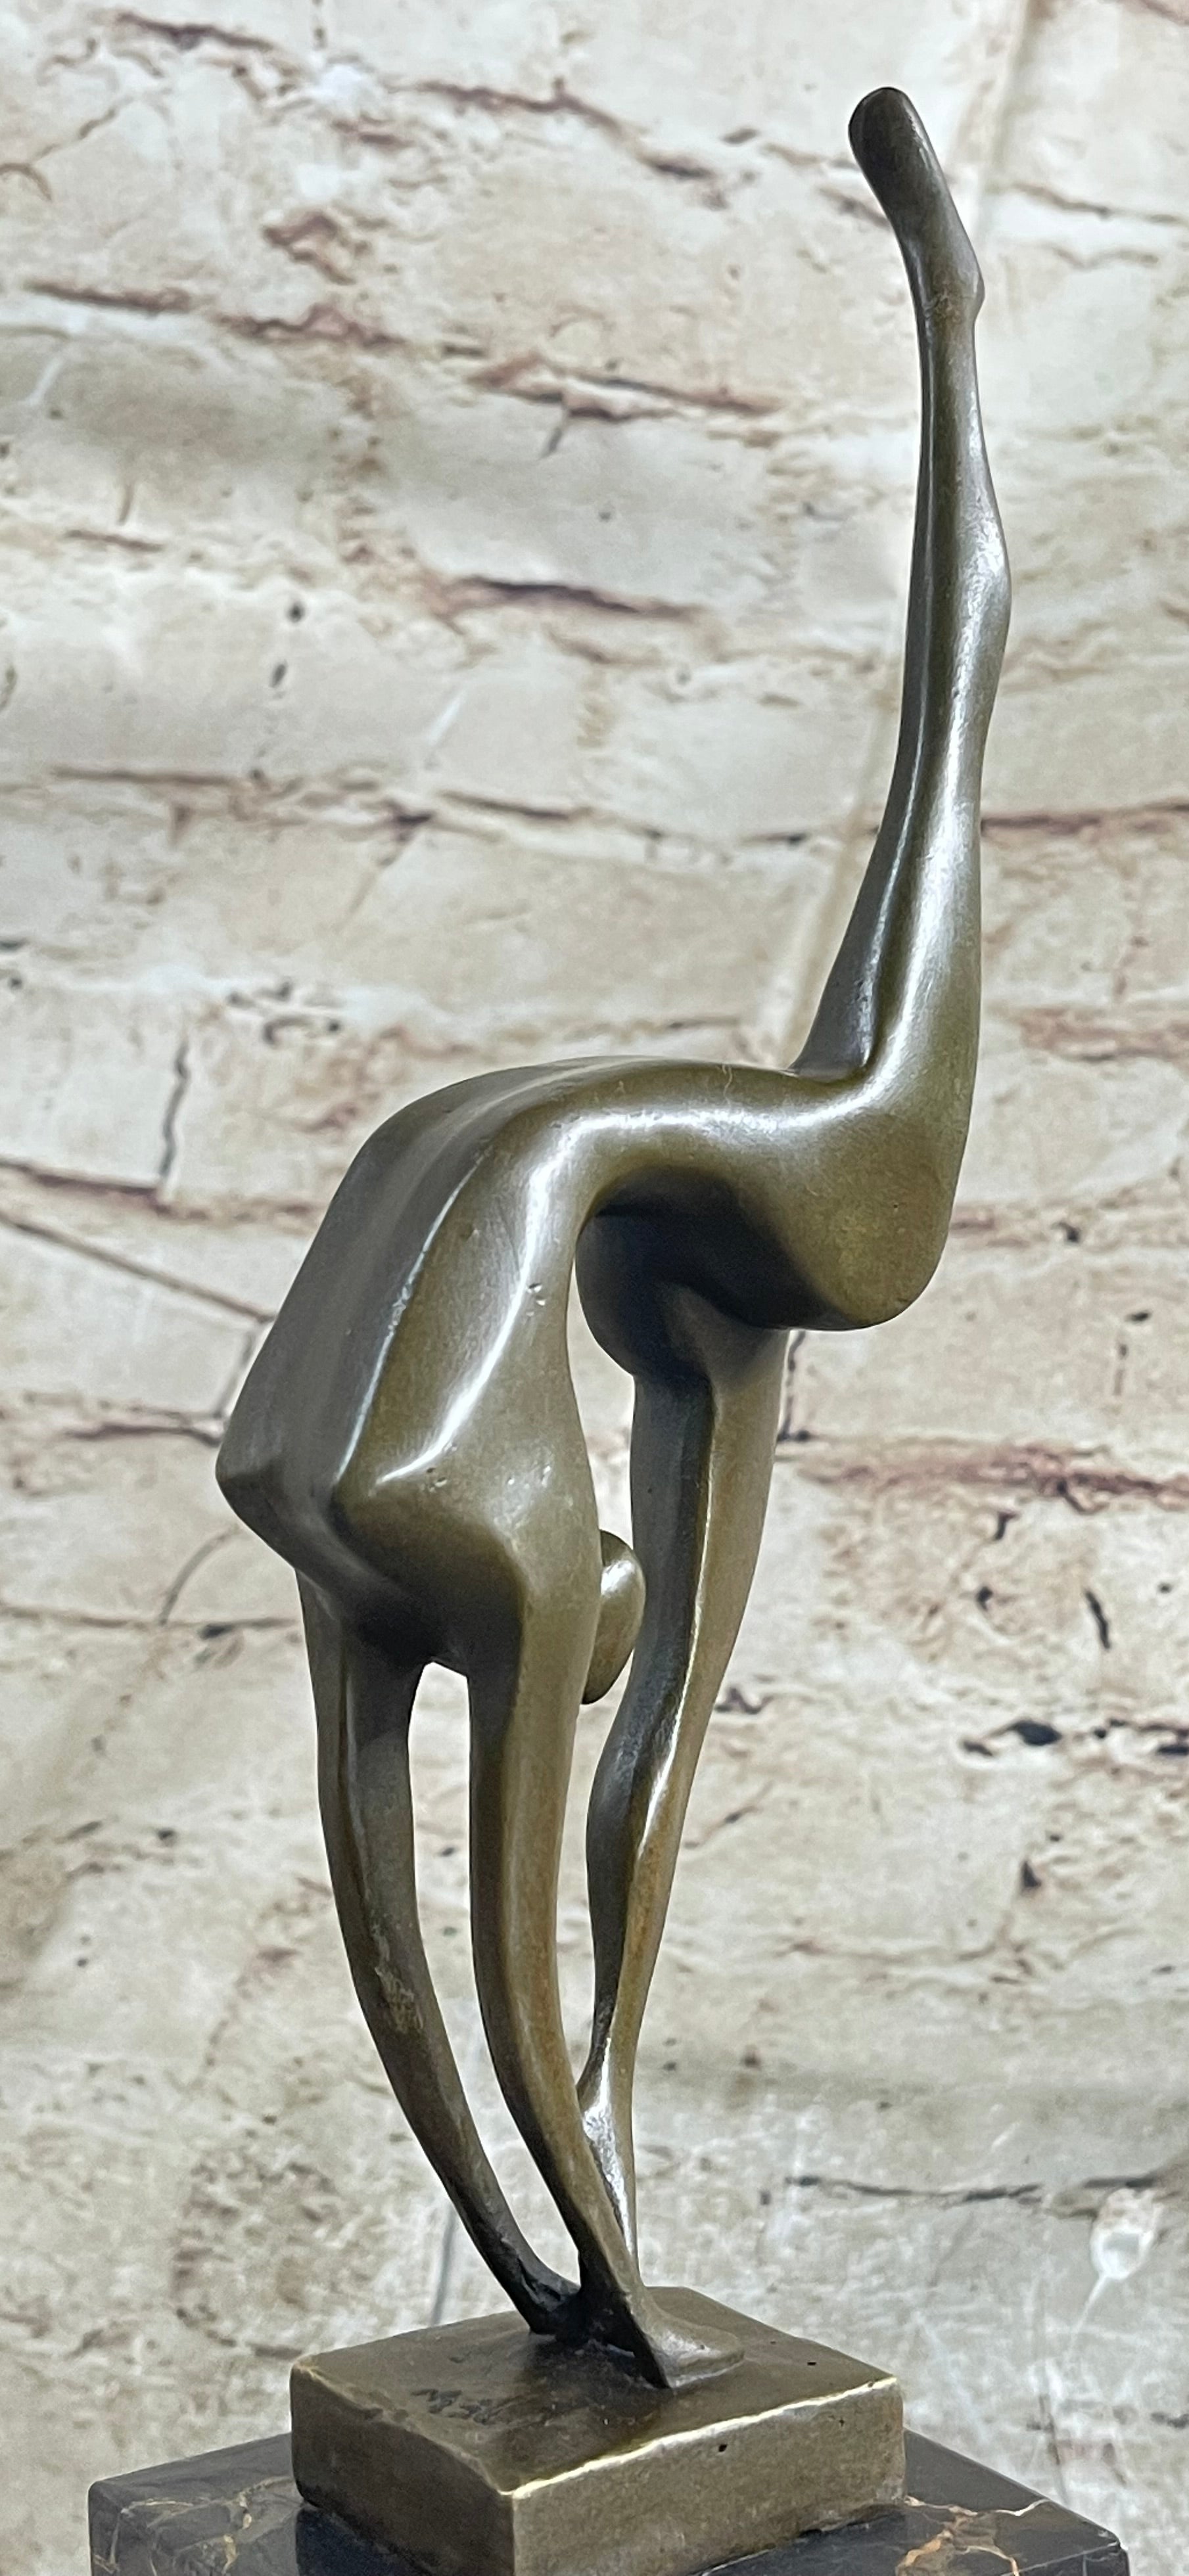 Abstract Modern Art Abstract Brown Patina Ballerina Figurine Bronze Sculpture NR